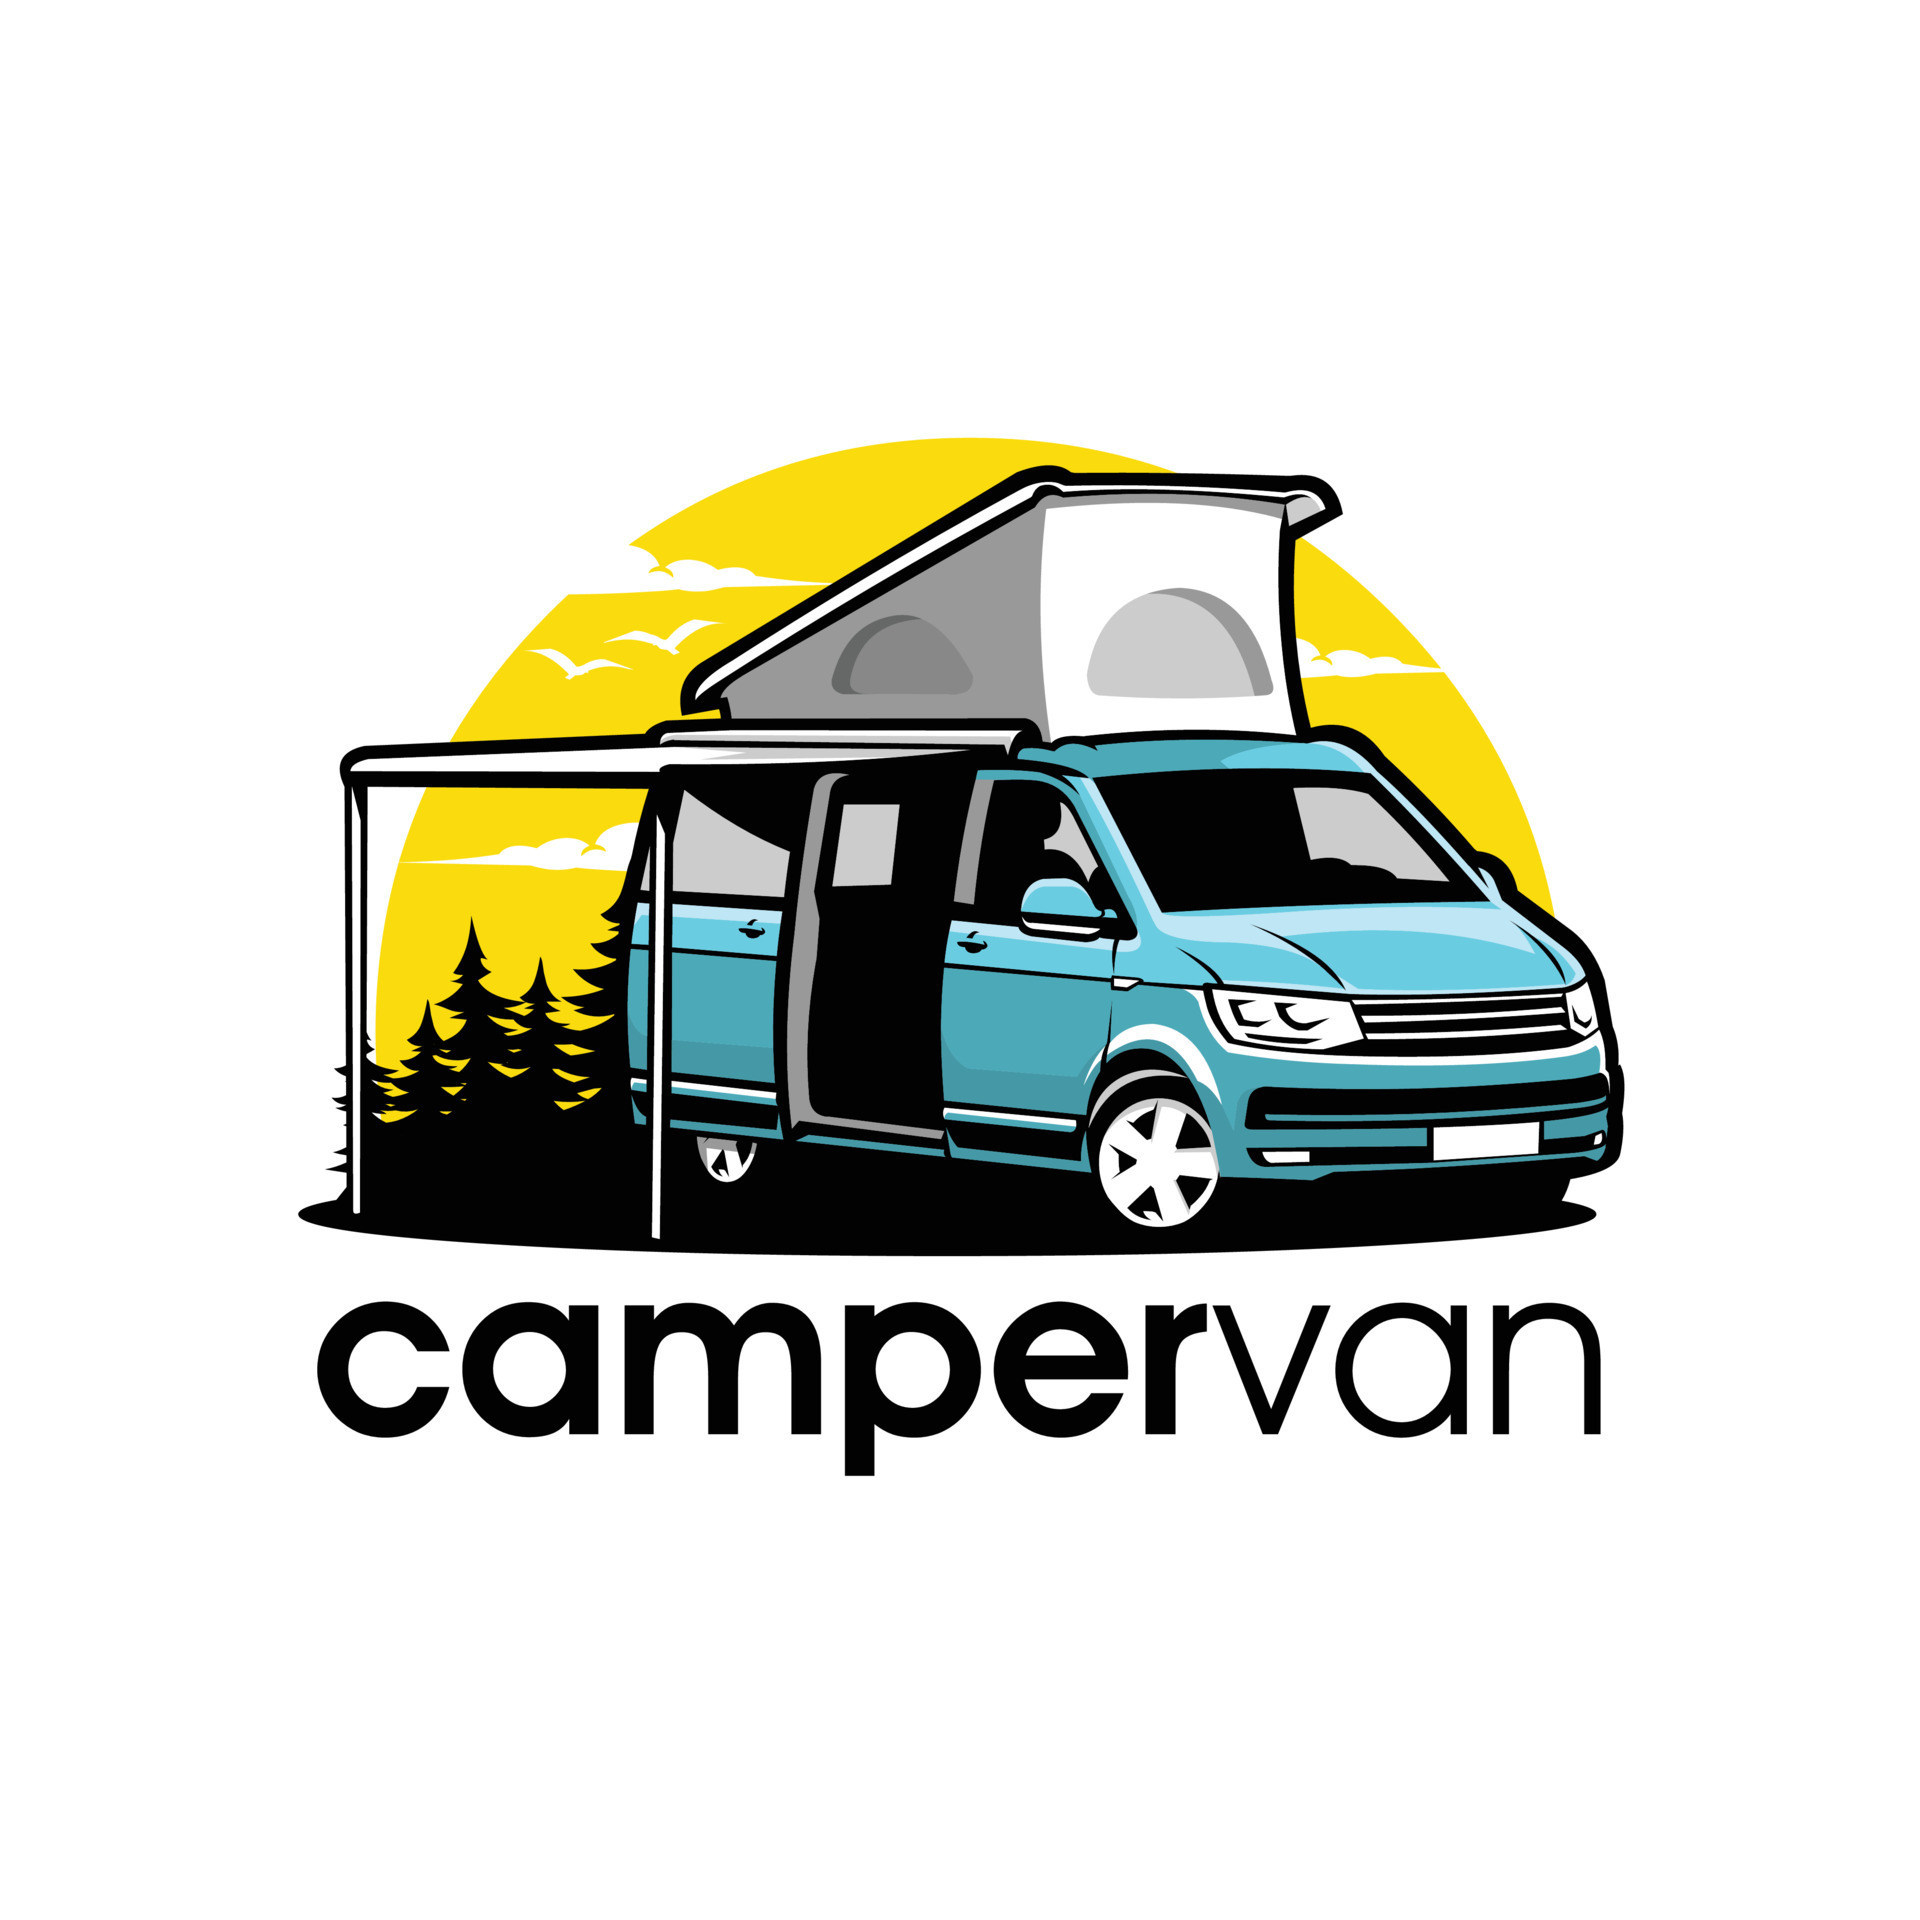 Premium campervan camping adventure in outdoor scenery. Best for ...